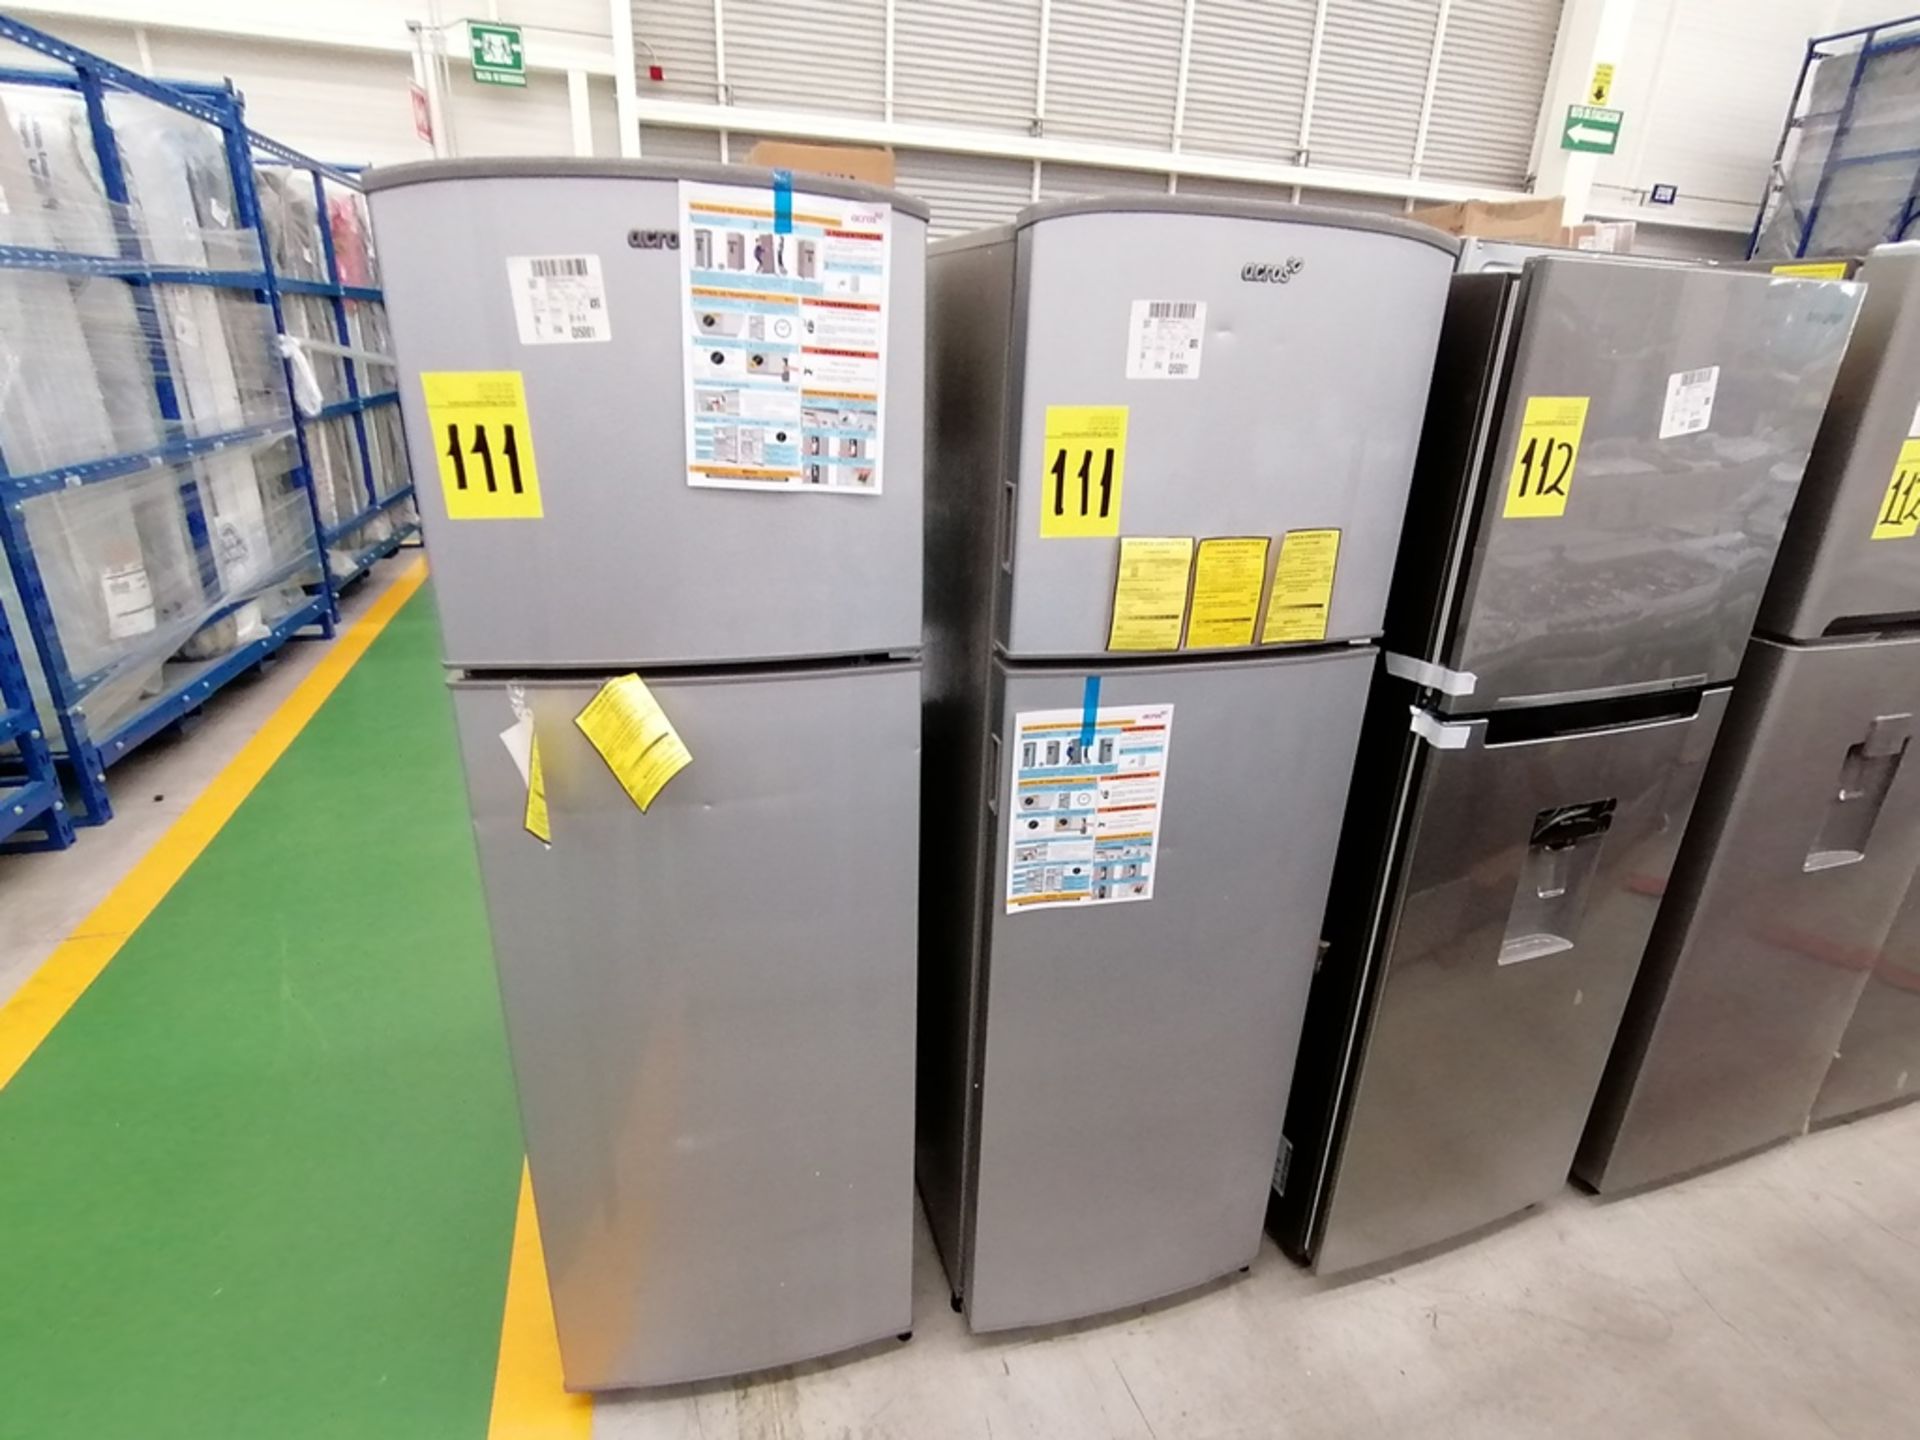 Lote de 2 refrigeradores incluye: 1 Refrigerador, Marca Acros, Modelo AT9007G, Serie VRA4332547, Co - Image 9 of 14